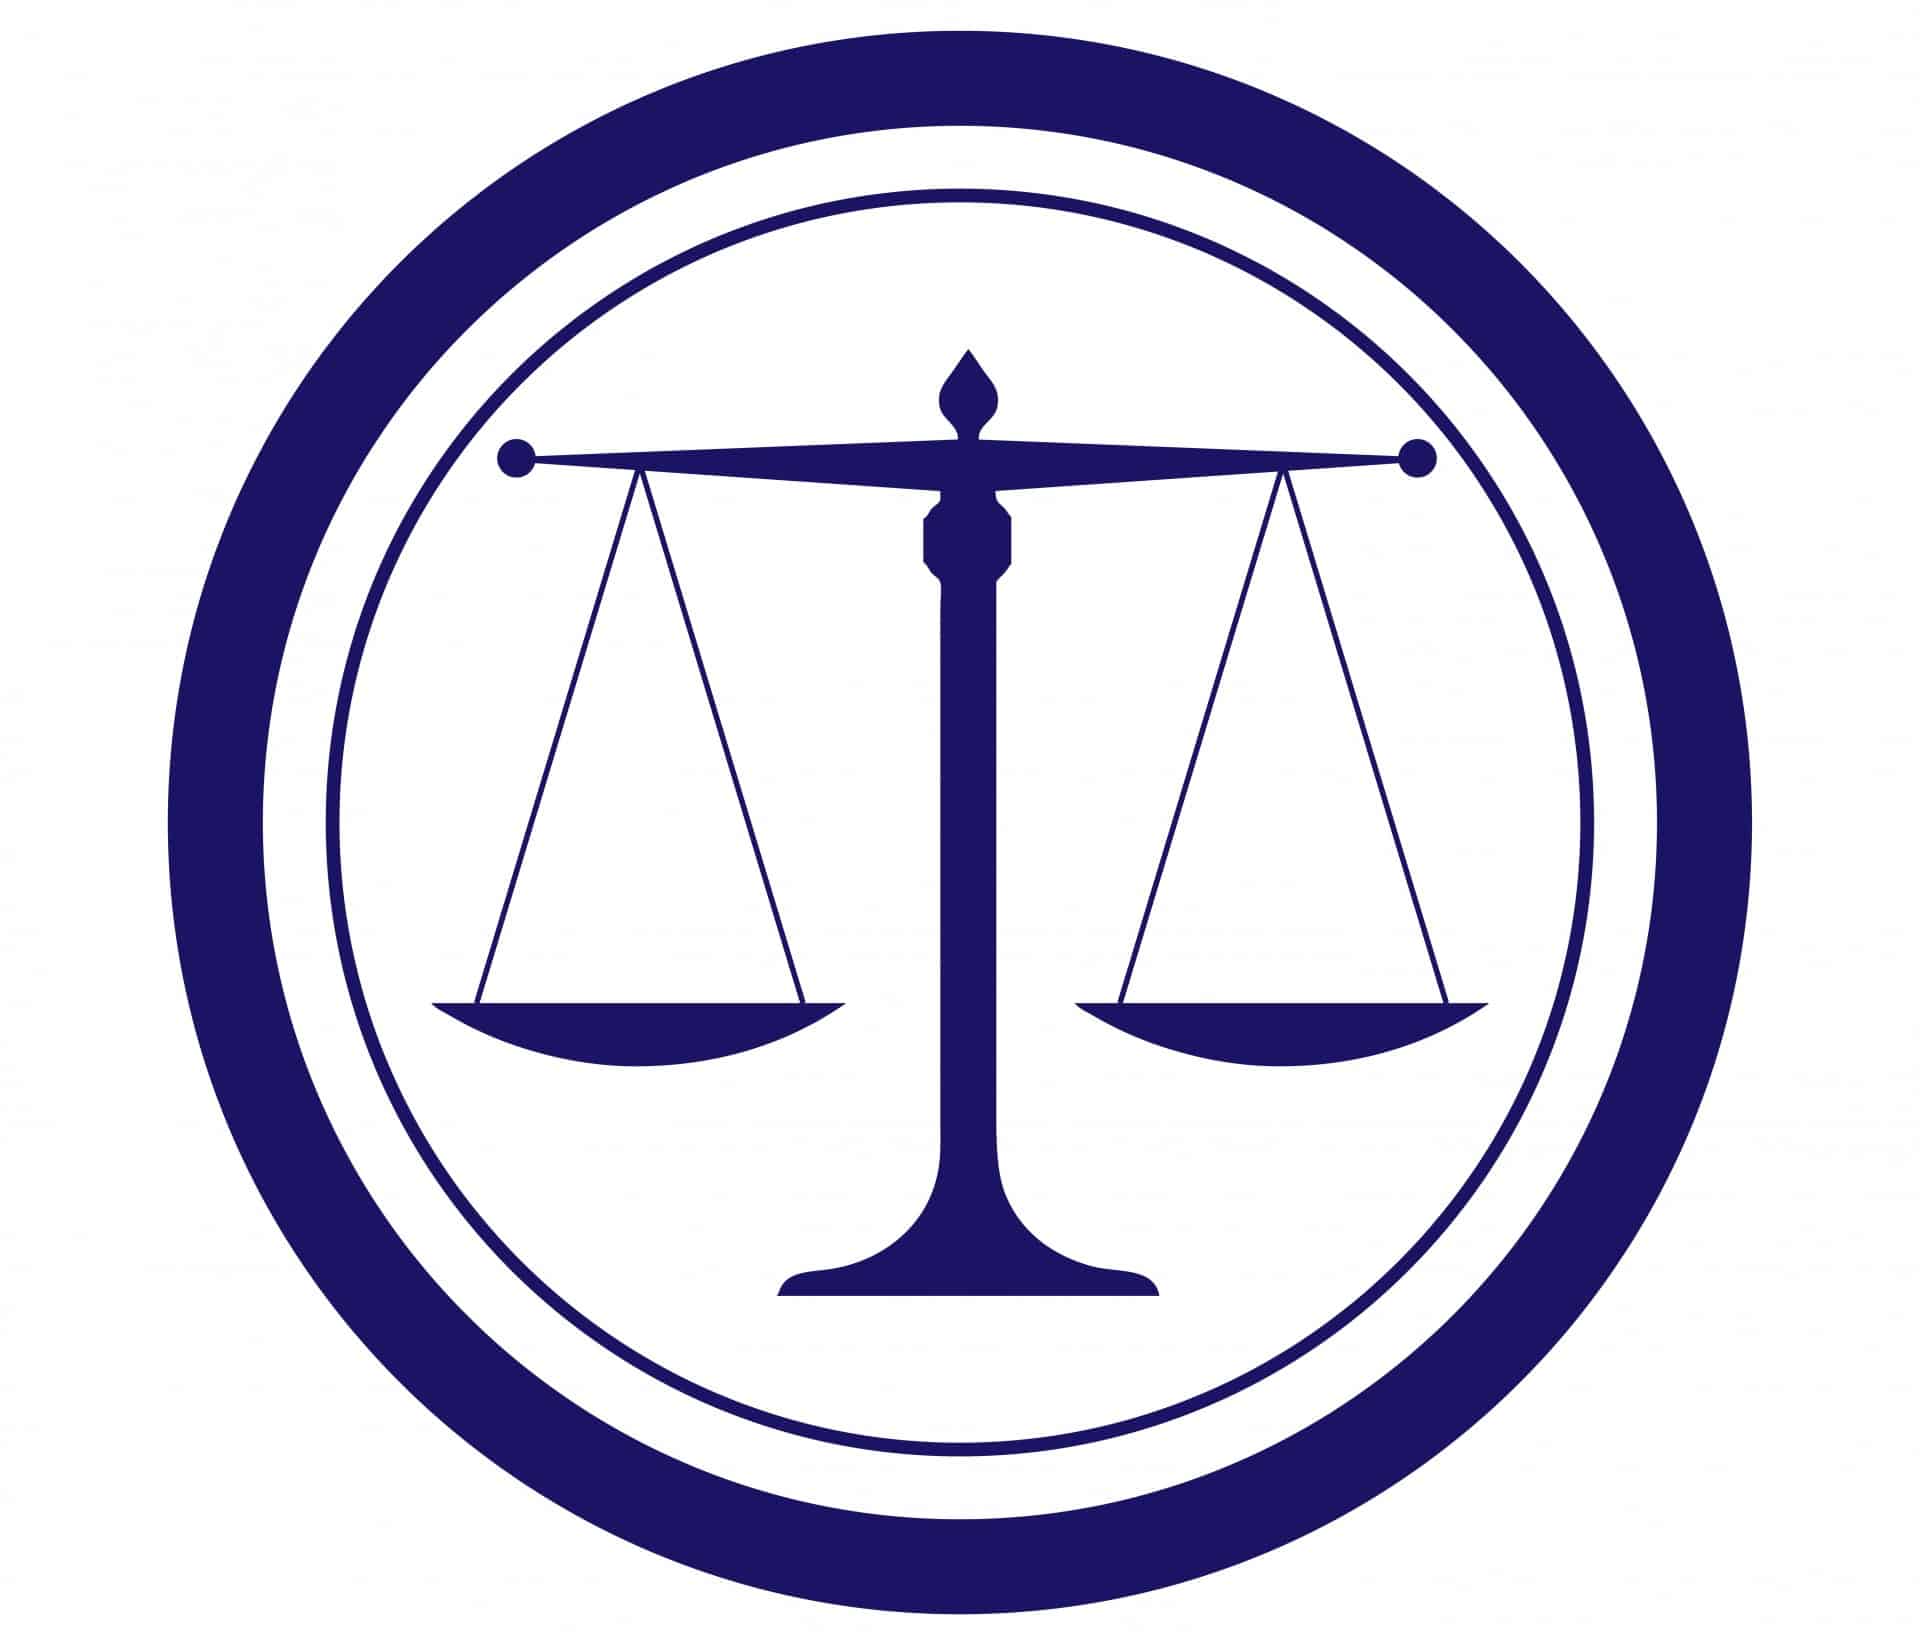 law logo